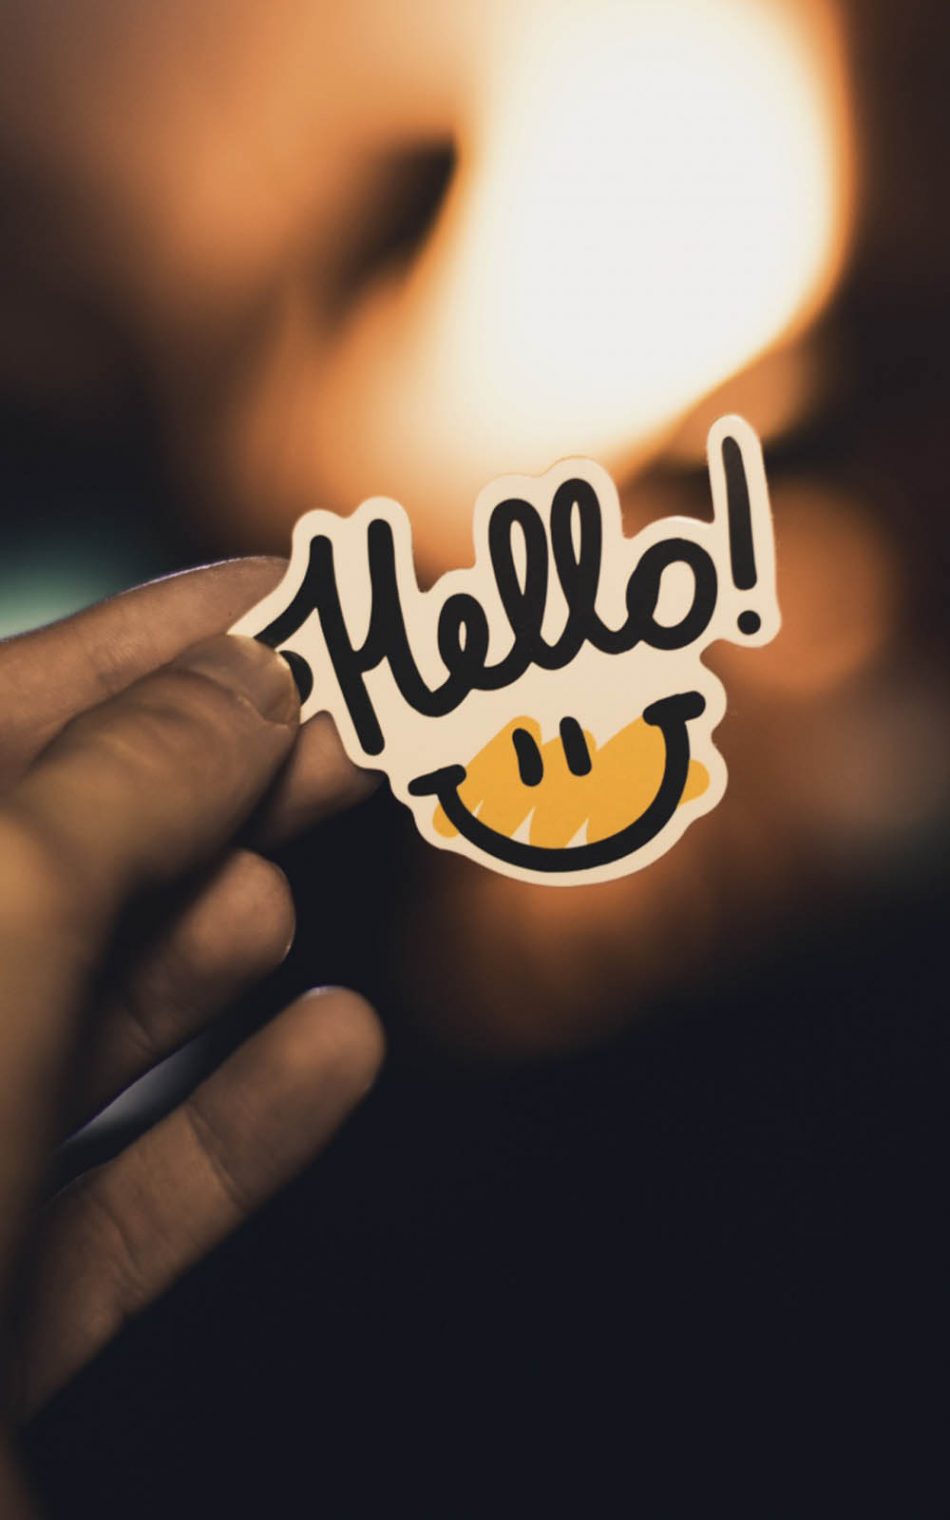 Hello Smile Hd Mobile Wallpaper - Hello Smile - HD Wallpaper 